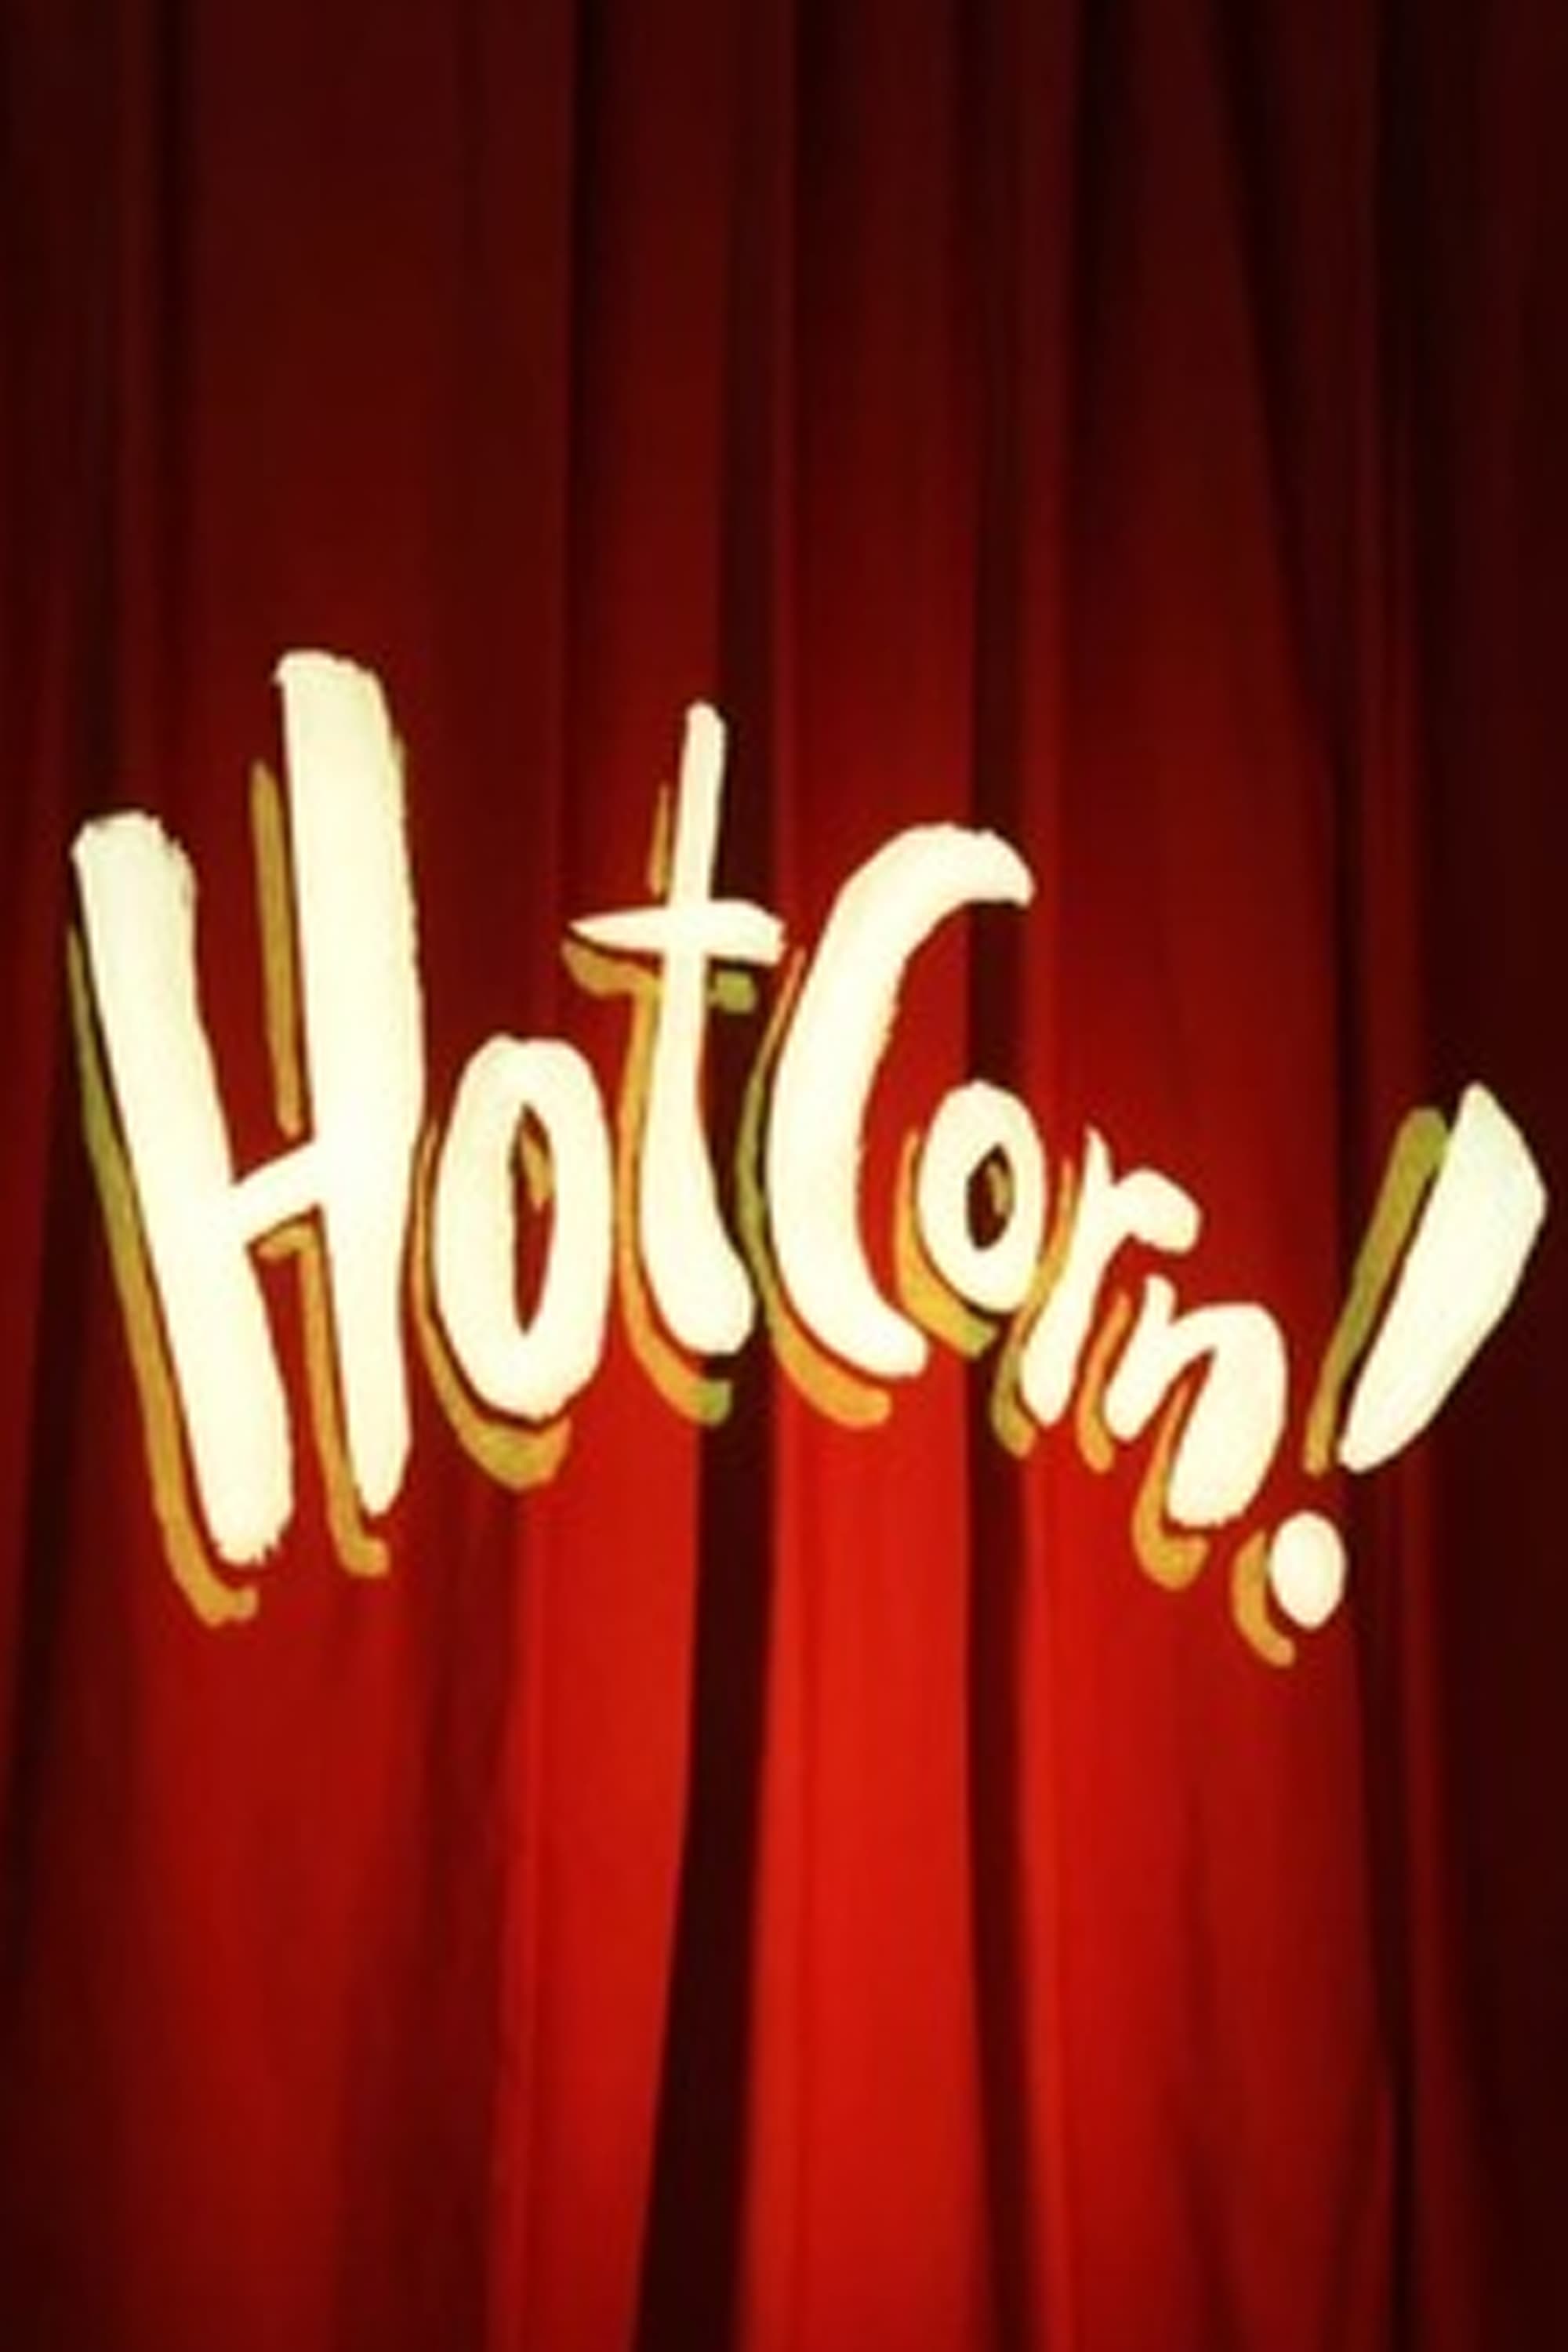 Hotcorn!